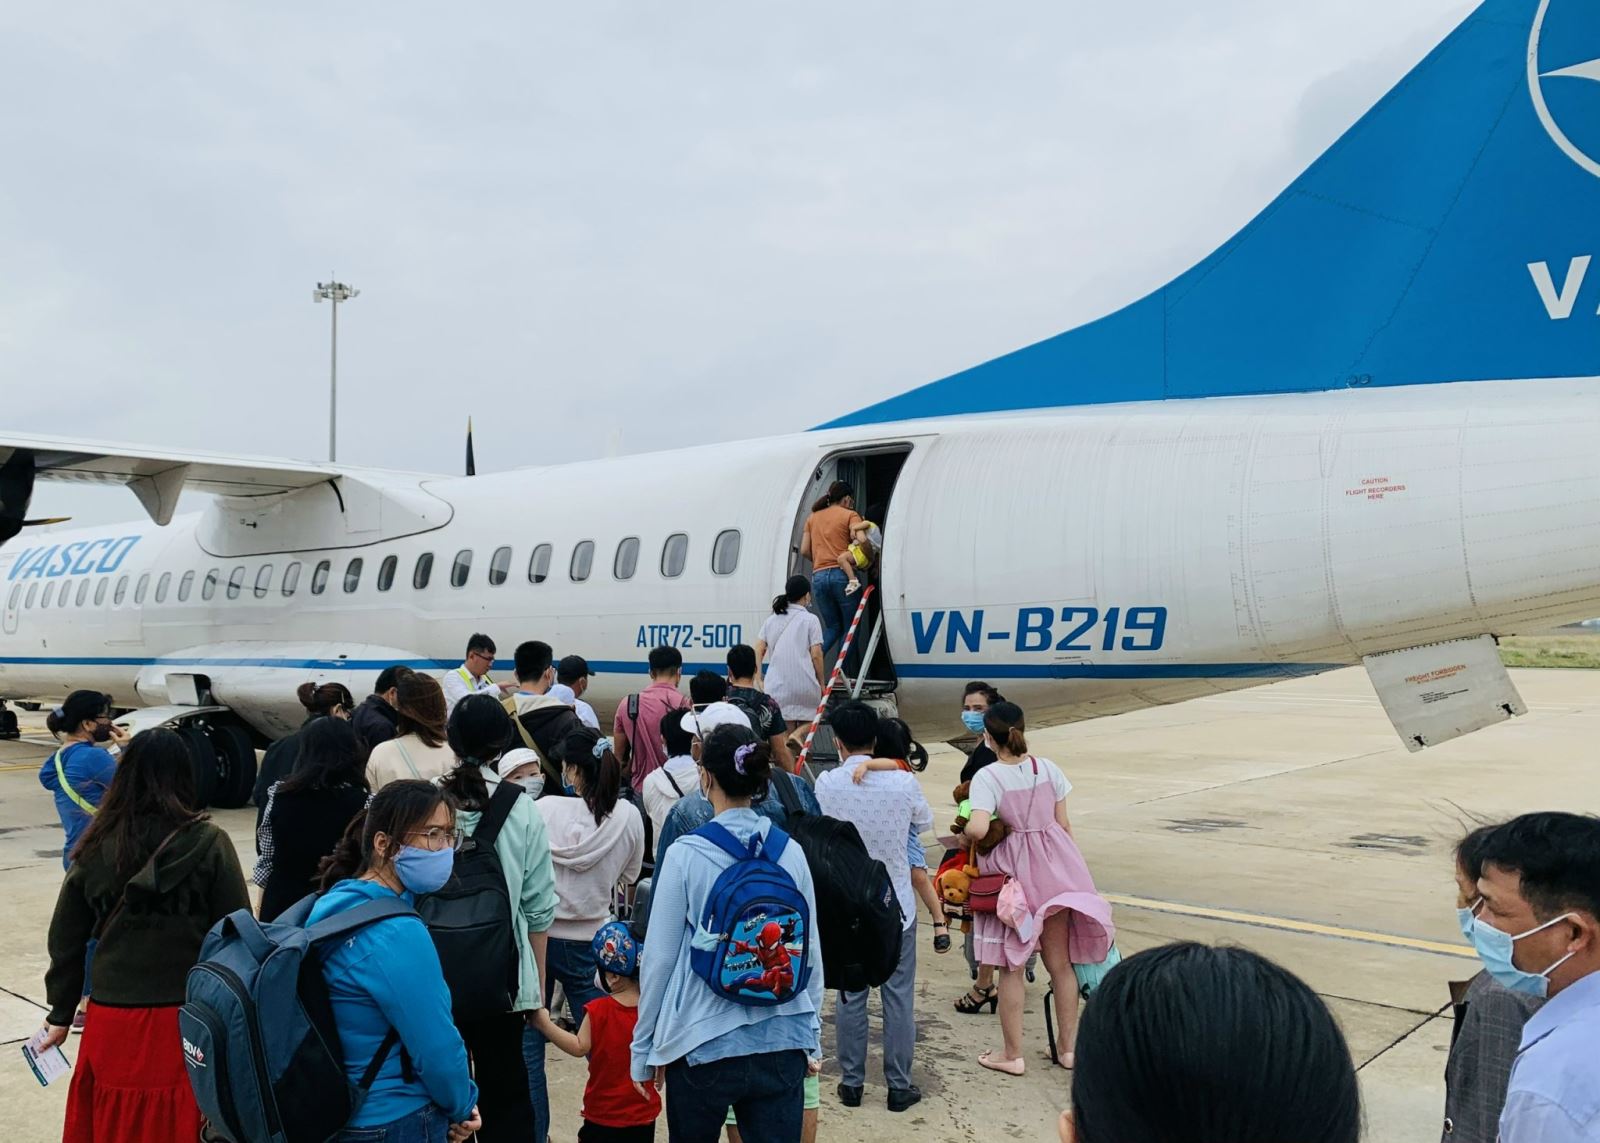 TP Hồ Chí Minh: Cao điểm mùa du lịch hè, giá vé máy bay tăng cao, sân bay 'quá tải' - Ảnh 1.